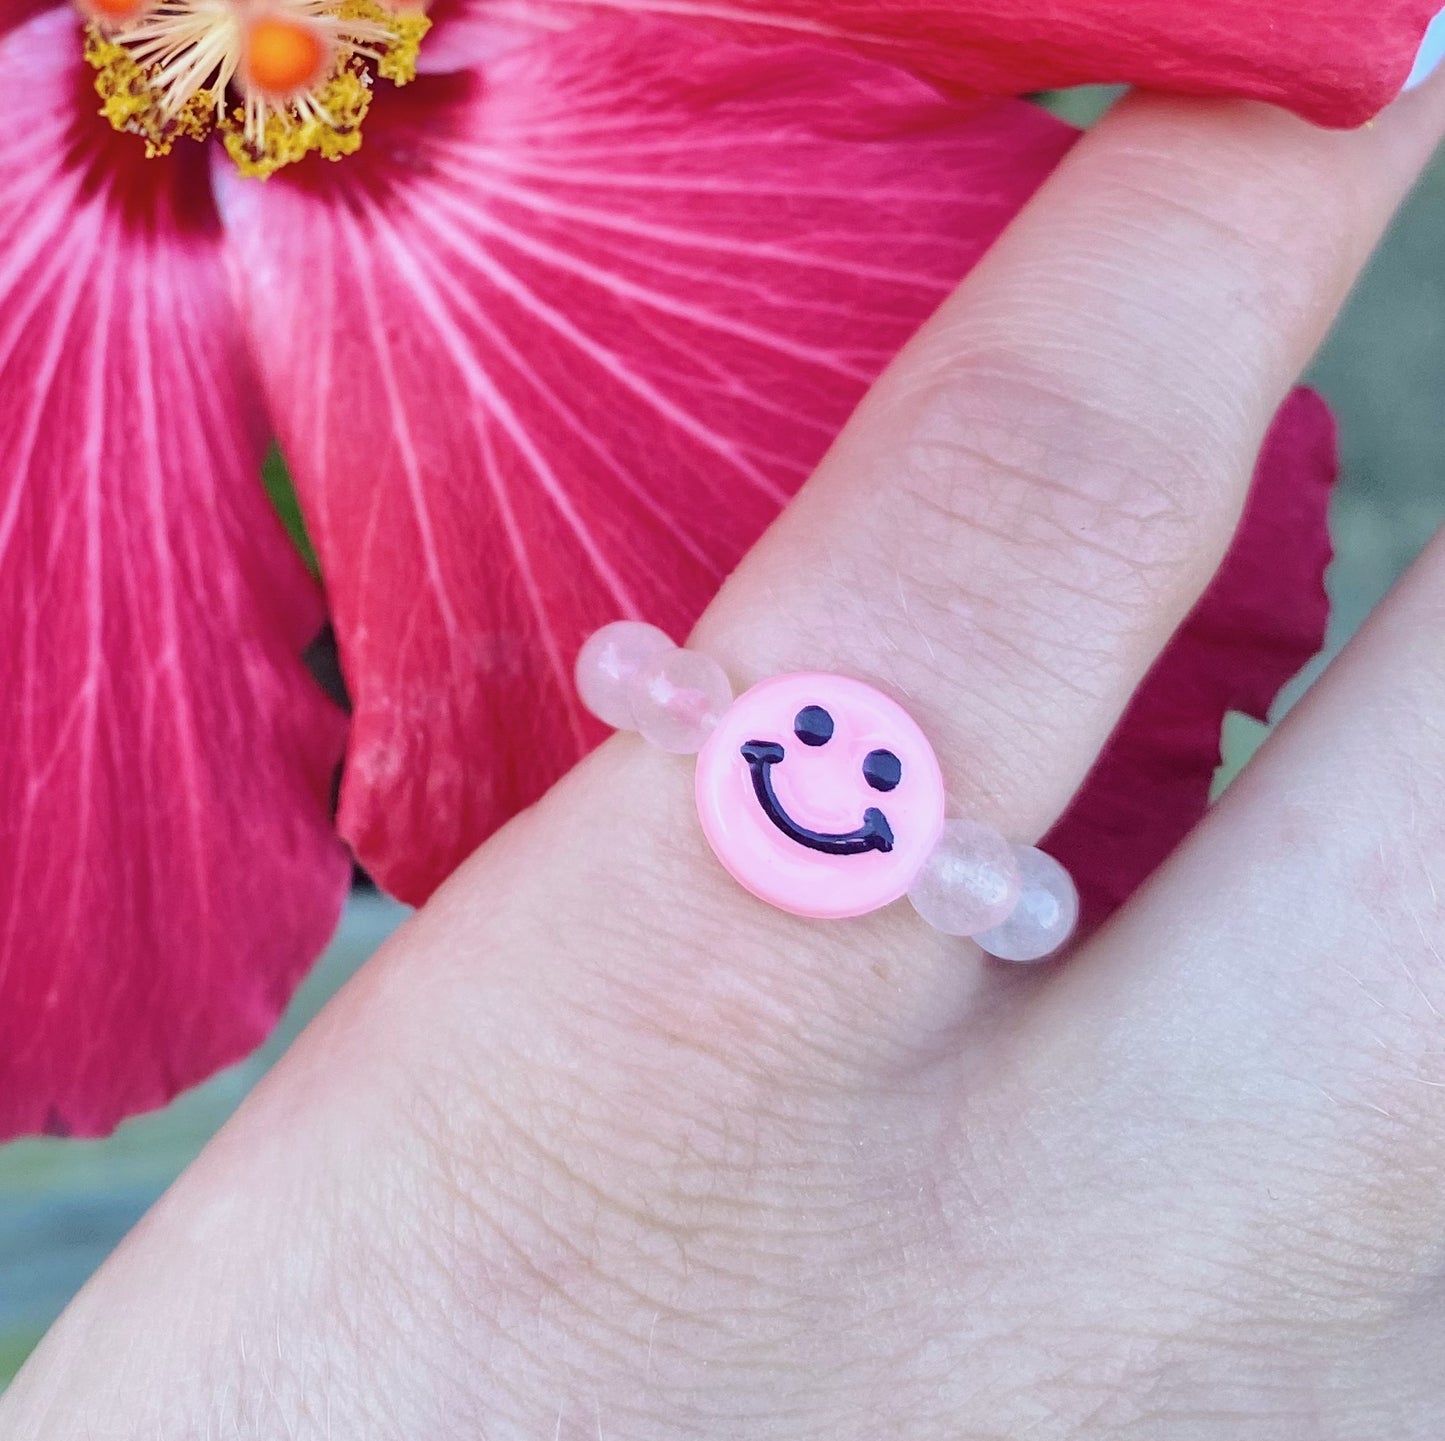 Pink gem ring